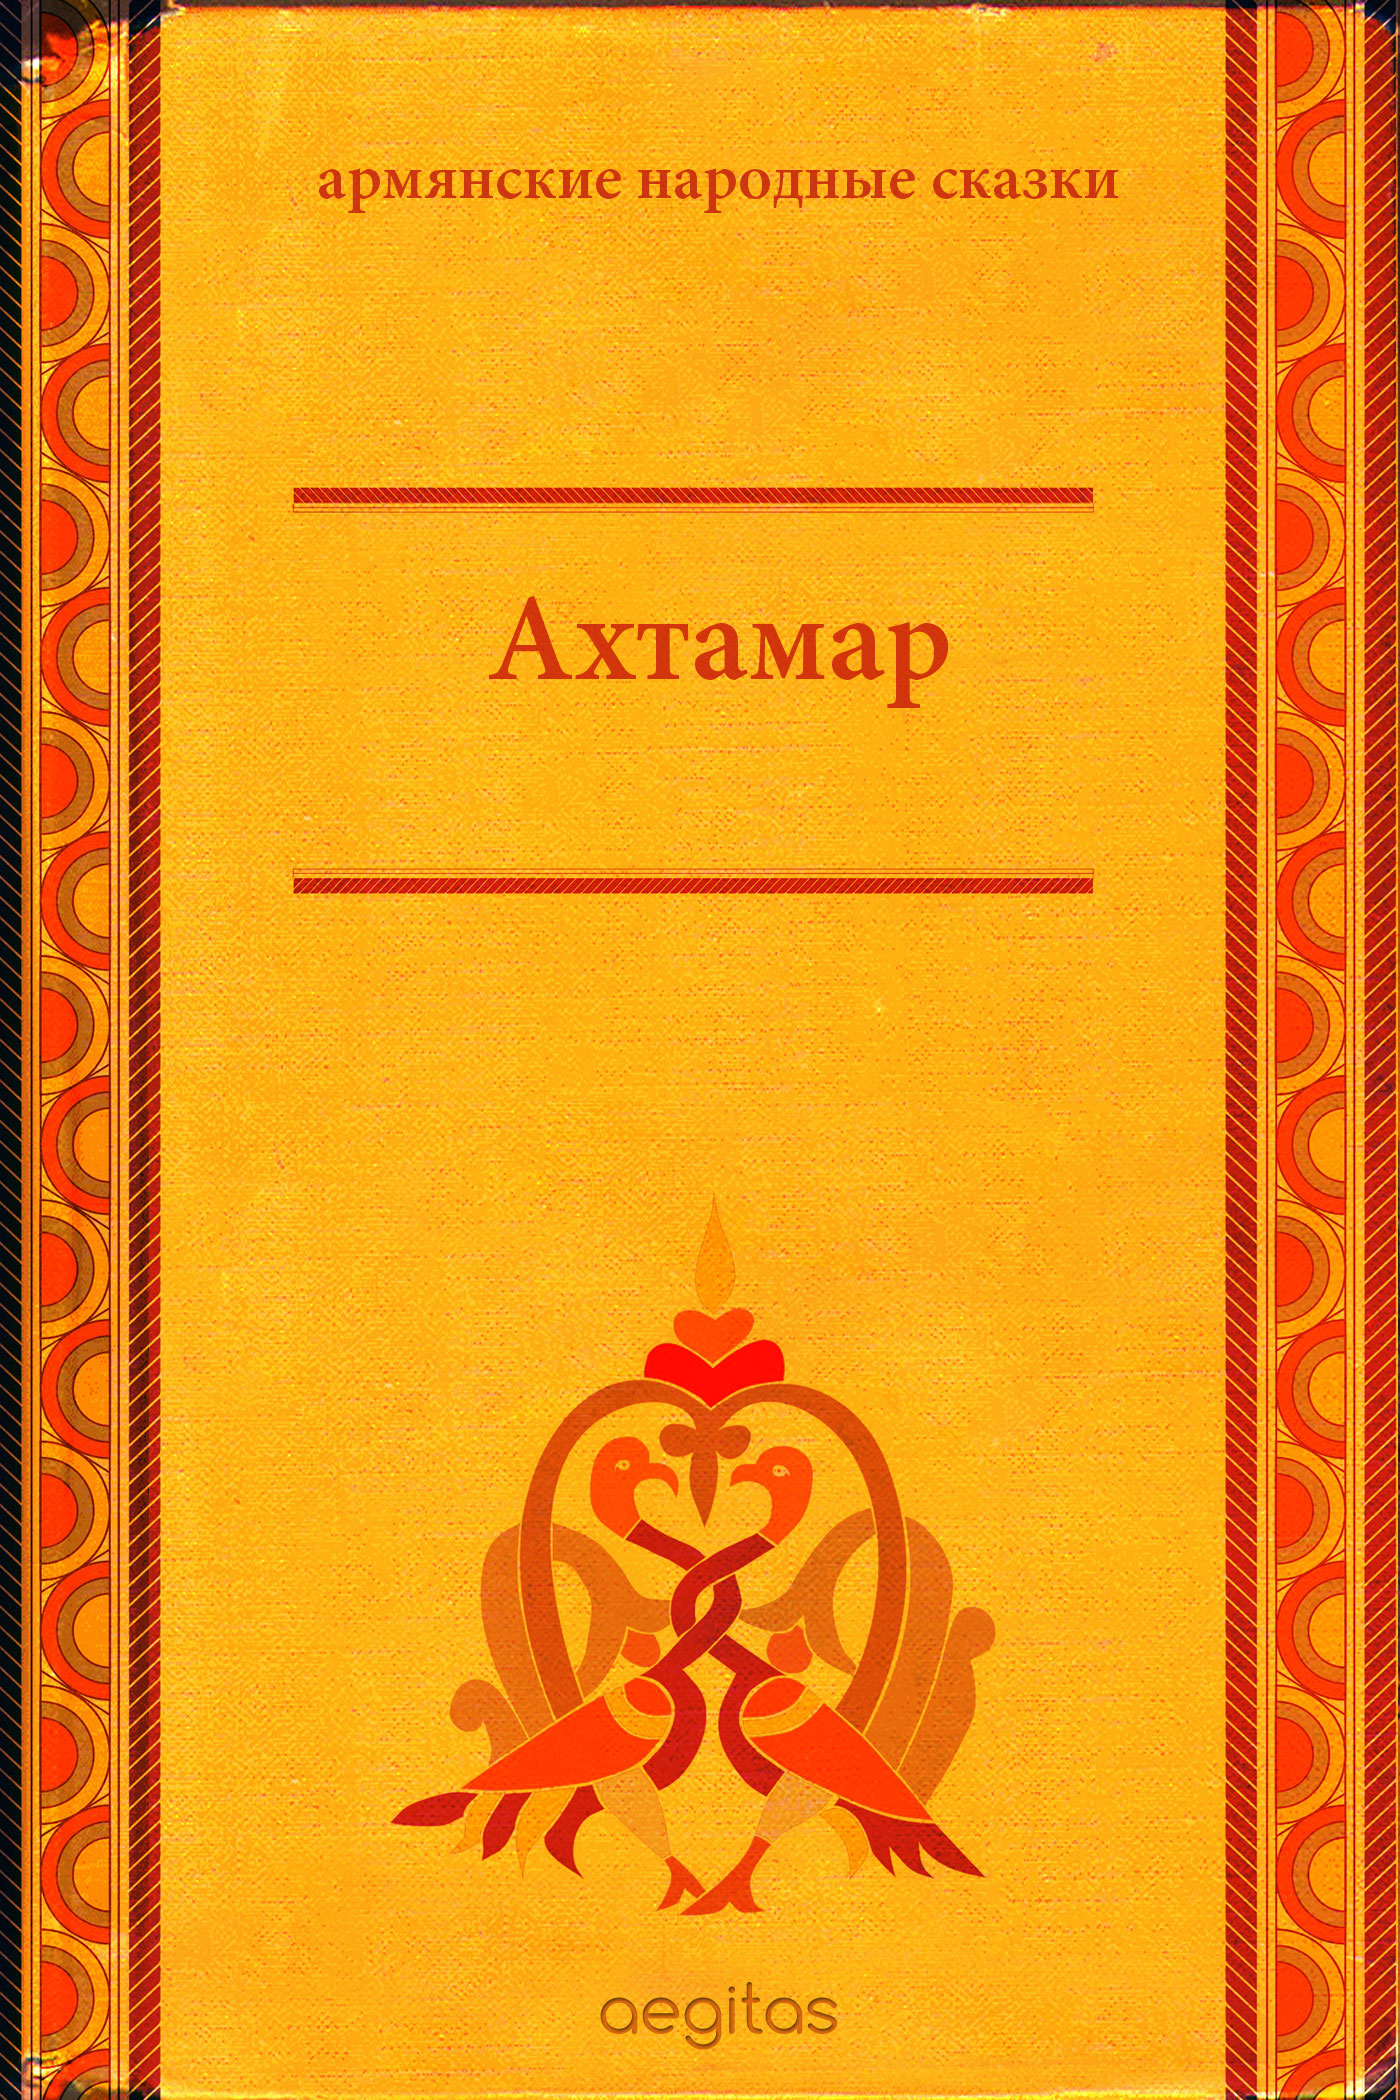 Книга Ахтамар из серии , созданная  Народное творчество (Фольклор), написана в жанре Мифы. Легенды. Эпос, Сказки. Стоимость электронной книги Ахтамар с идентификатором 24429718 составляет 0.90 руб.